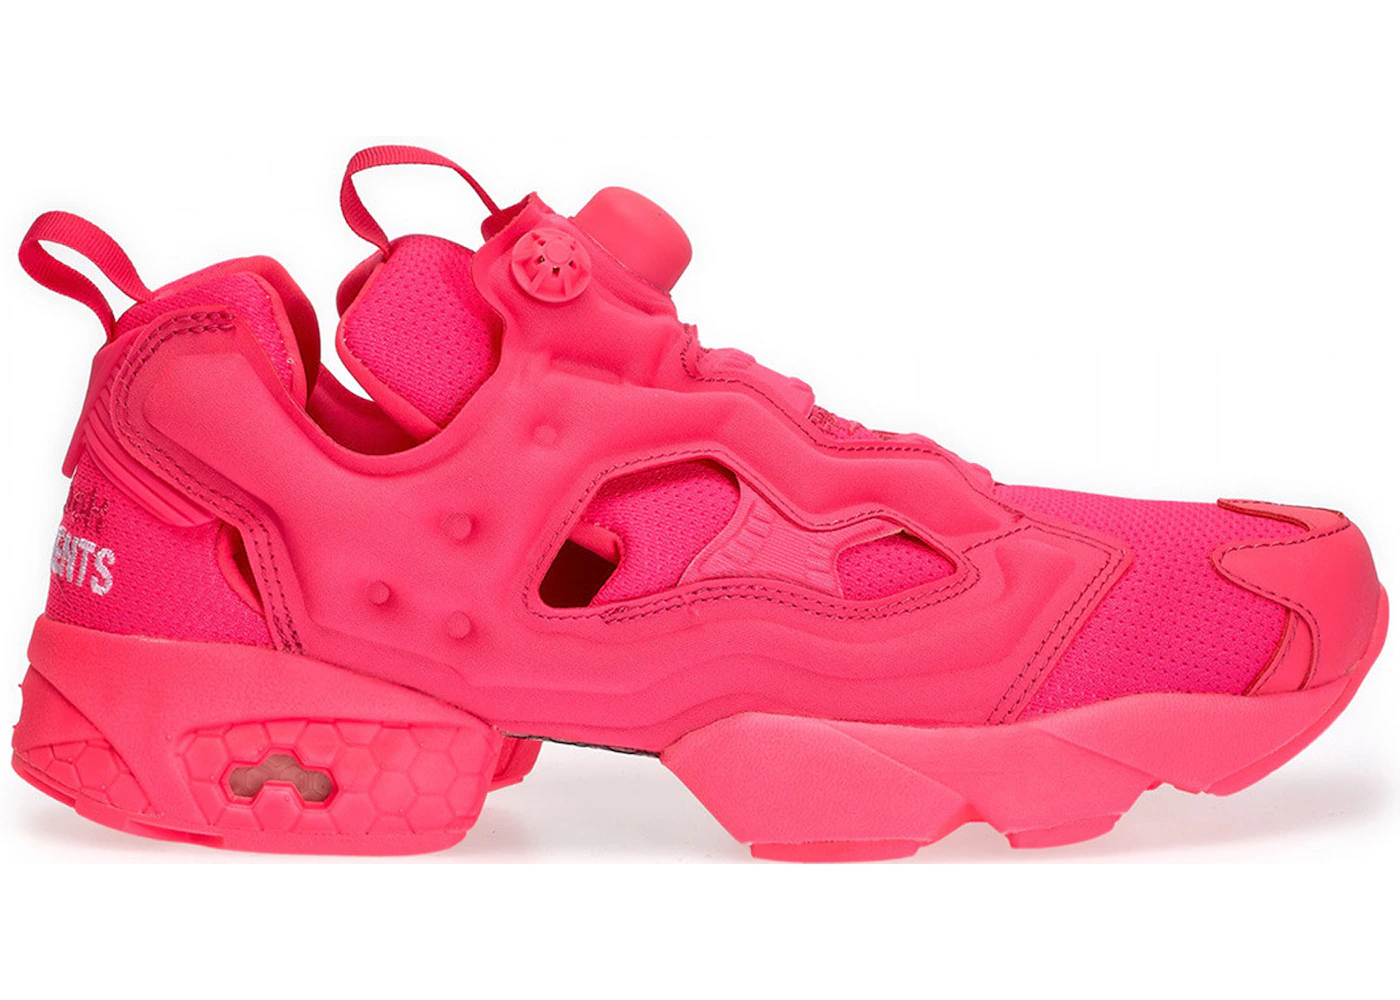 Reebok Instapump Fury Vetements Fluorescent Pink Men's - Sneakers - US